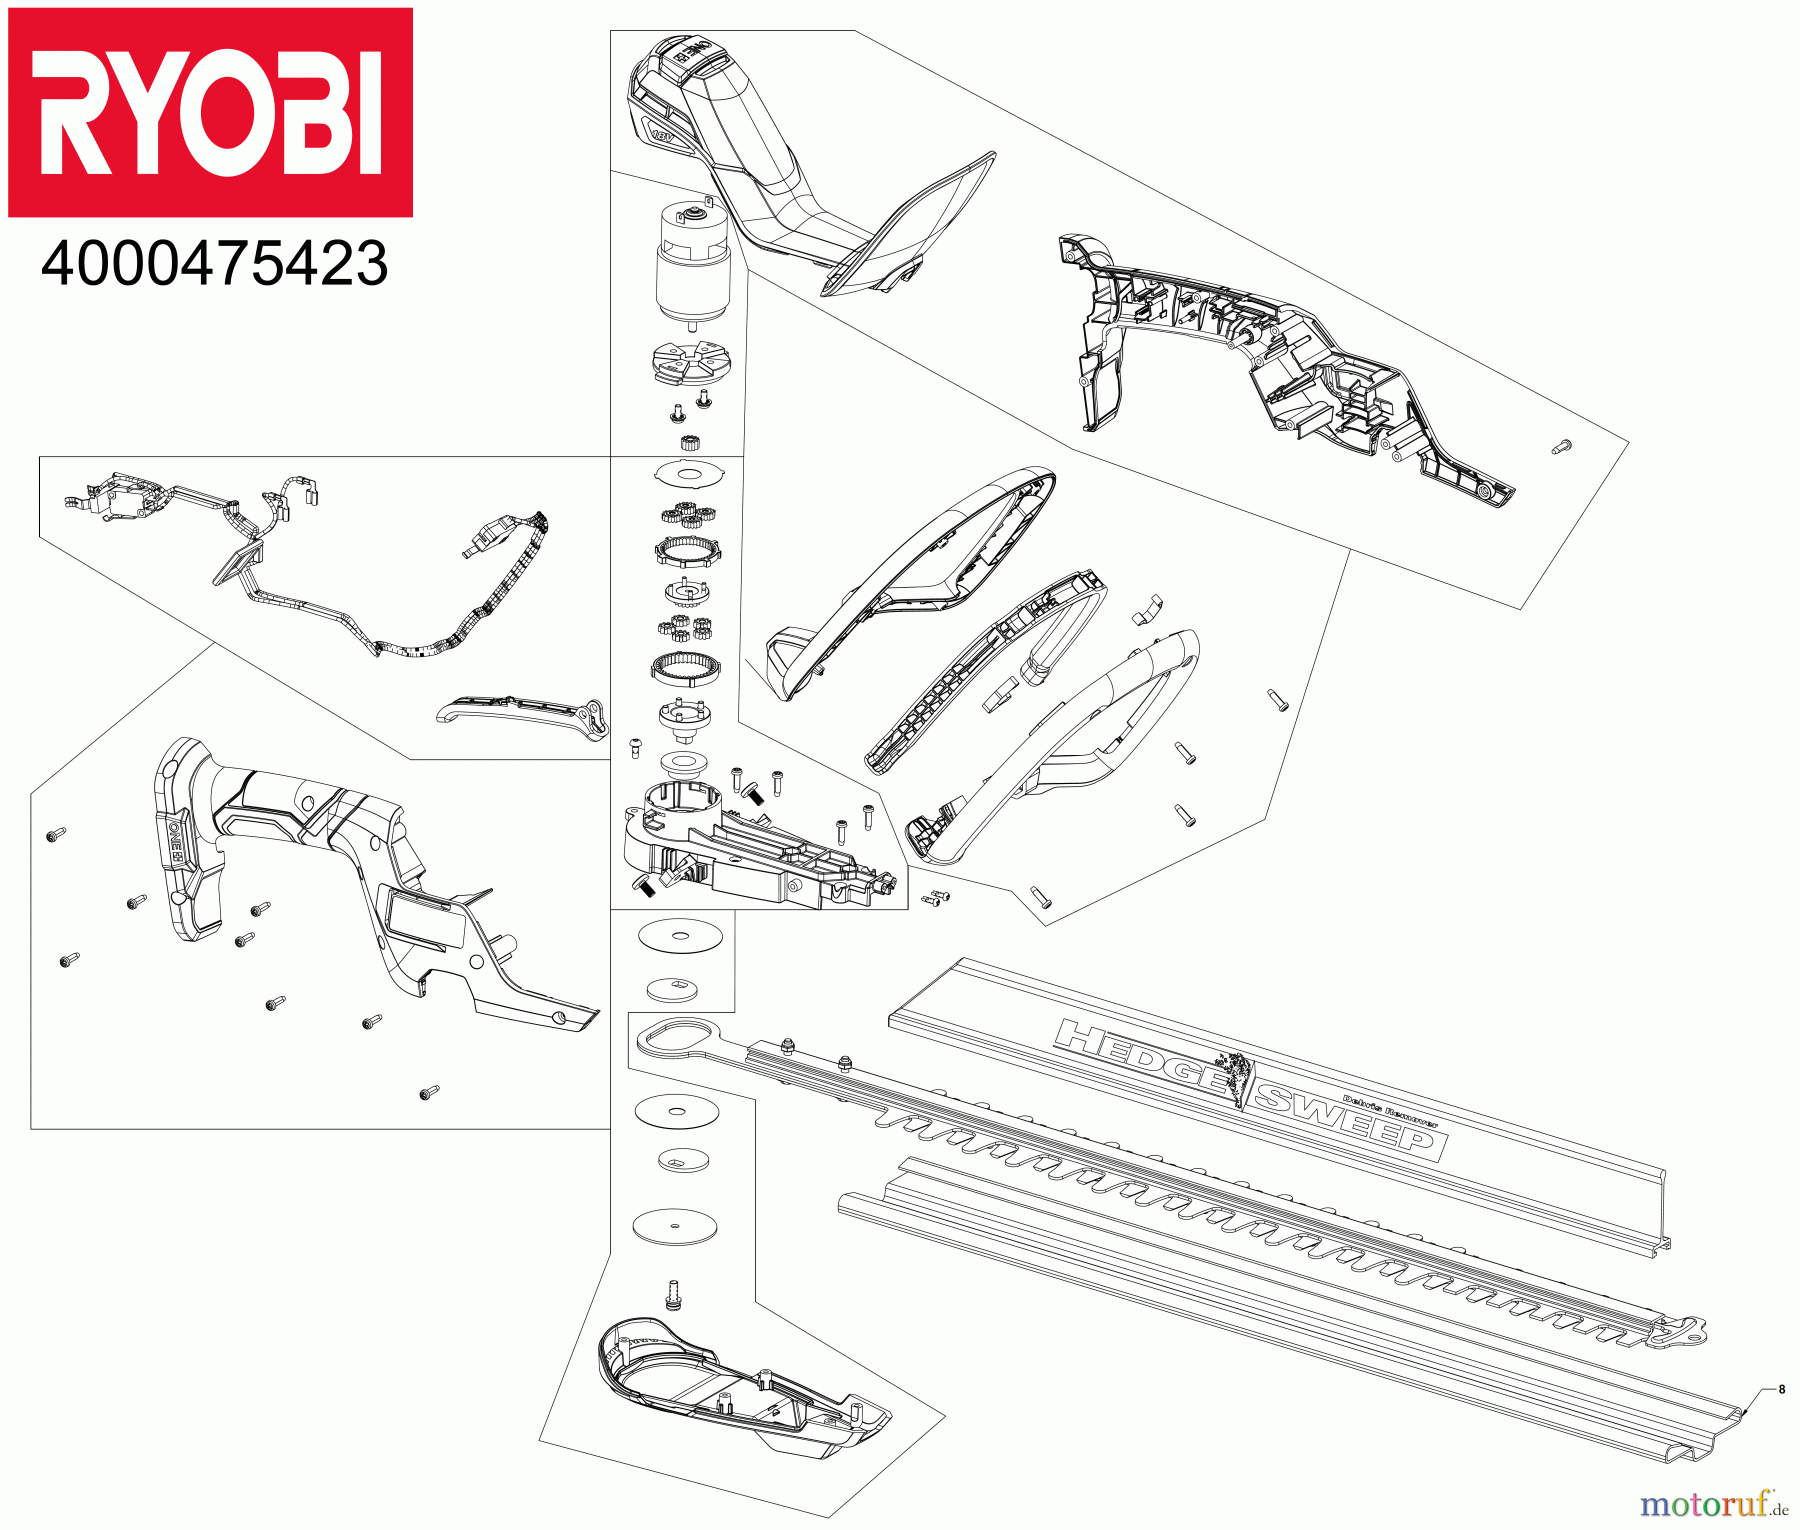  Ryobi Heckenscheren Akku RY18HT55A 18 V ONE+ Akku-Heckenschere, Sägeblattlänge 55 cm Seite 1